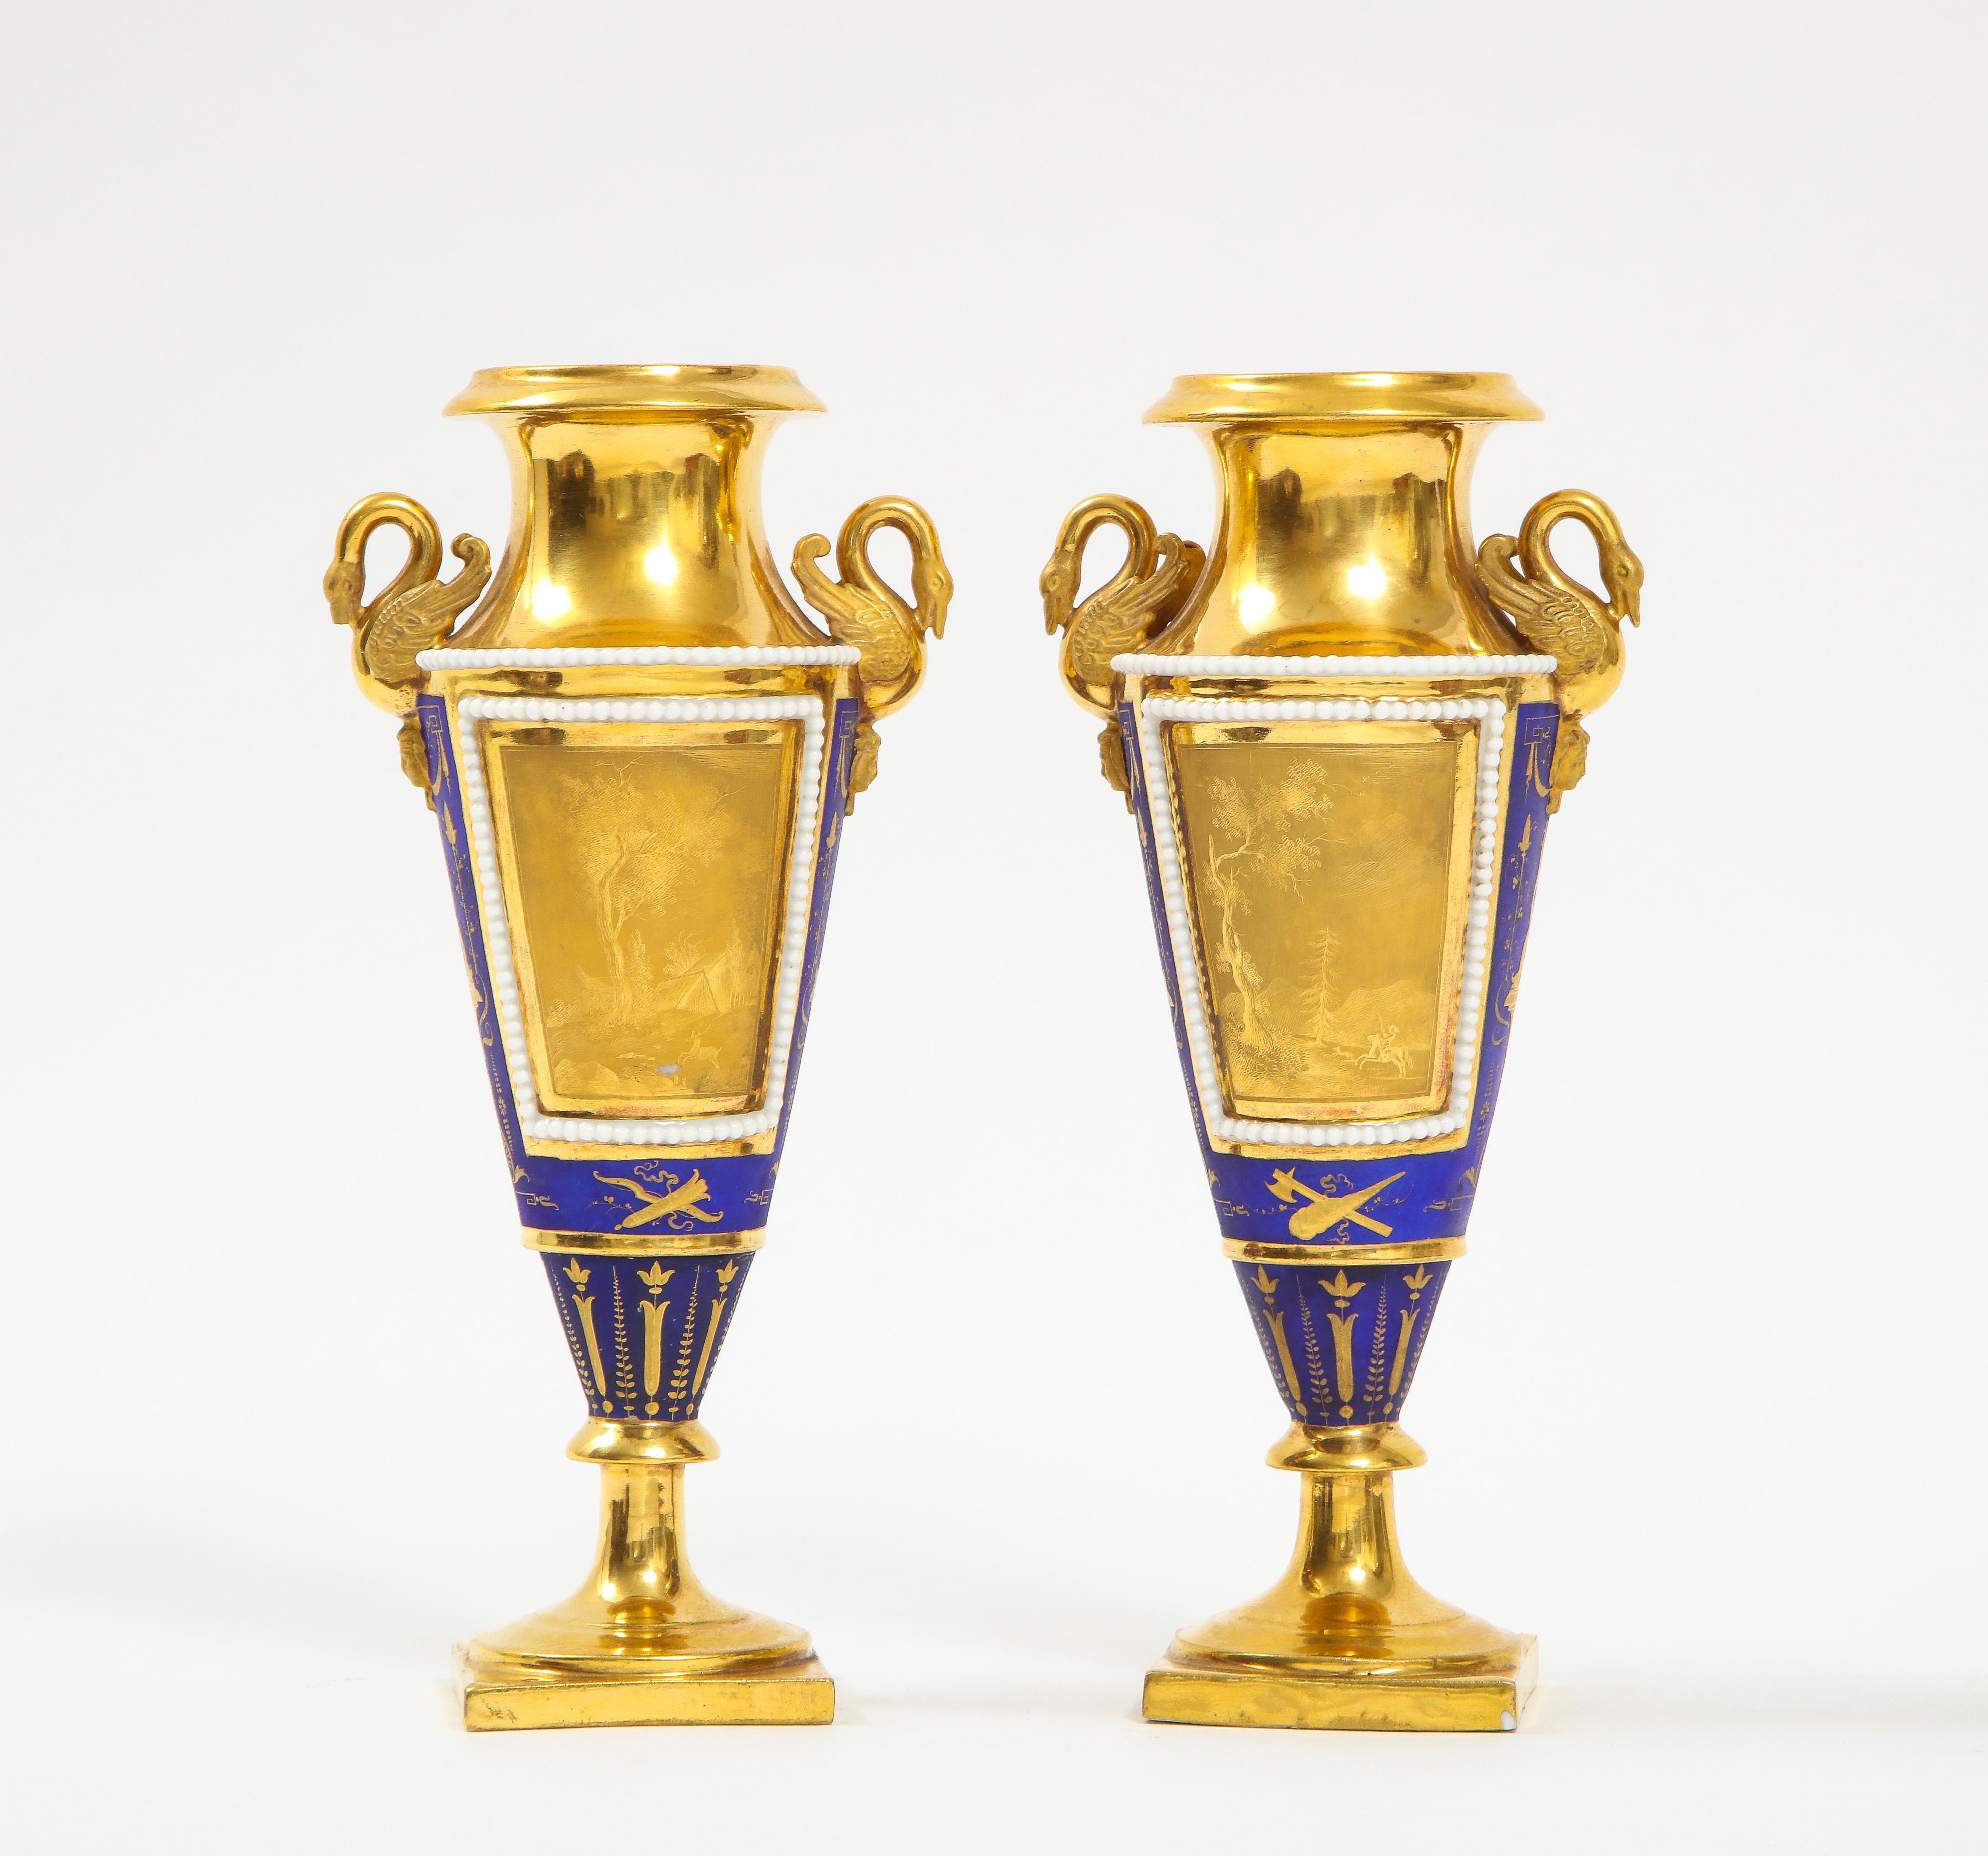 Ein fantastisches Paar kobaltblauer und goldgrundiger Porzellanvasen mit Schwanengriff aus dem Russischen Reich. Jedes Stück hat die Form A einer Amphora mit einer wunderschönen, mattierten, brünierten und glänzenden 24-karätigen Goldverzierung auf